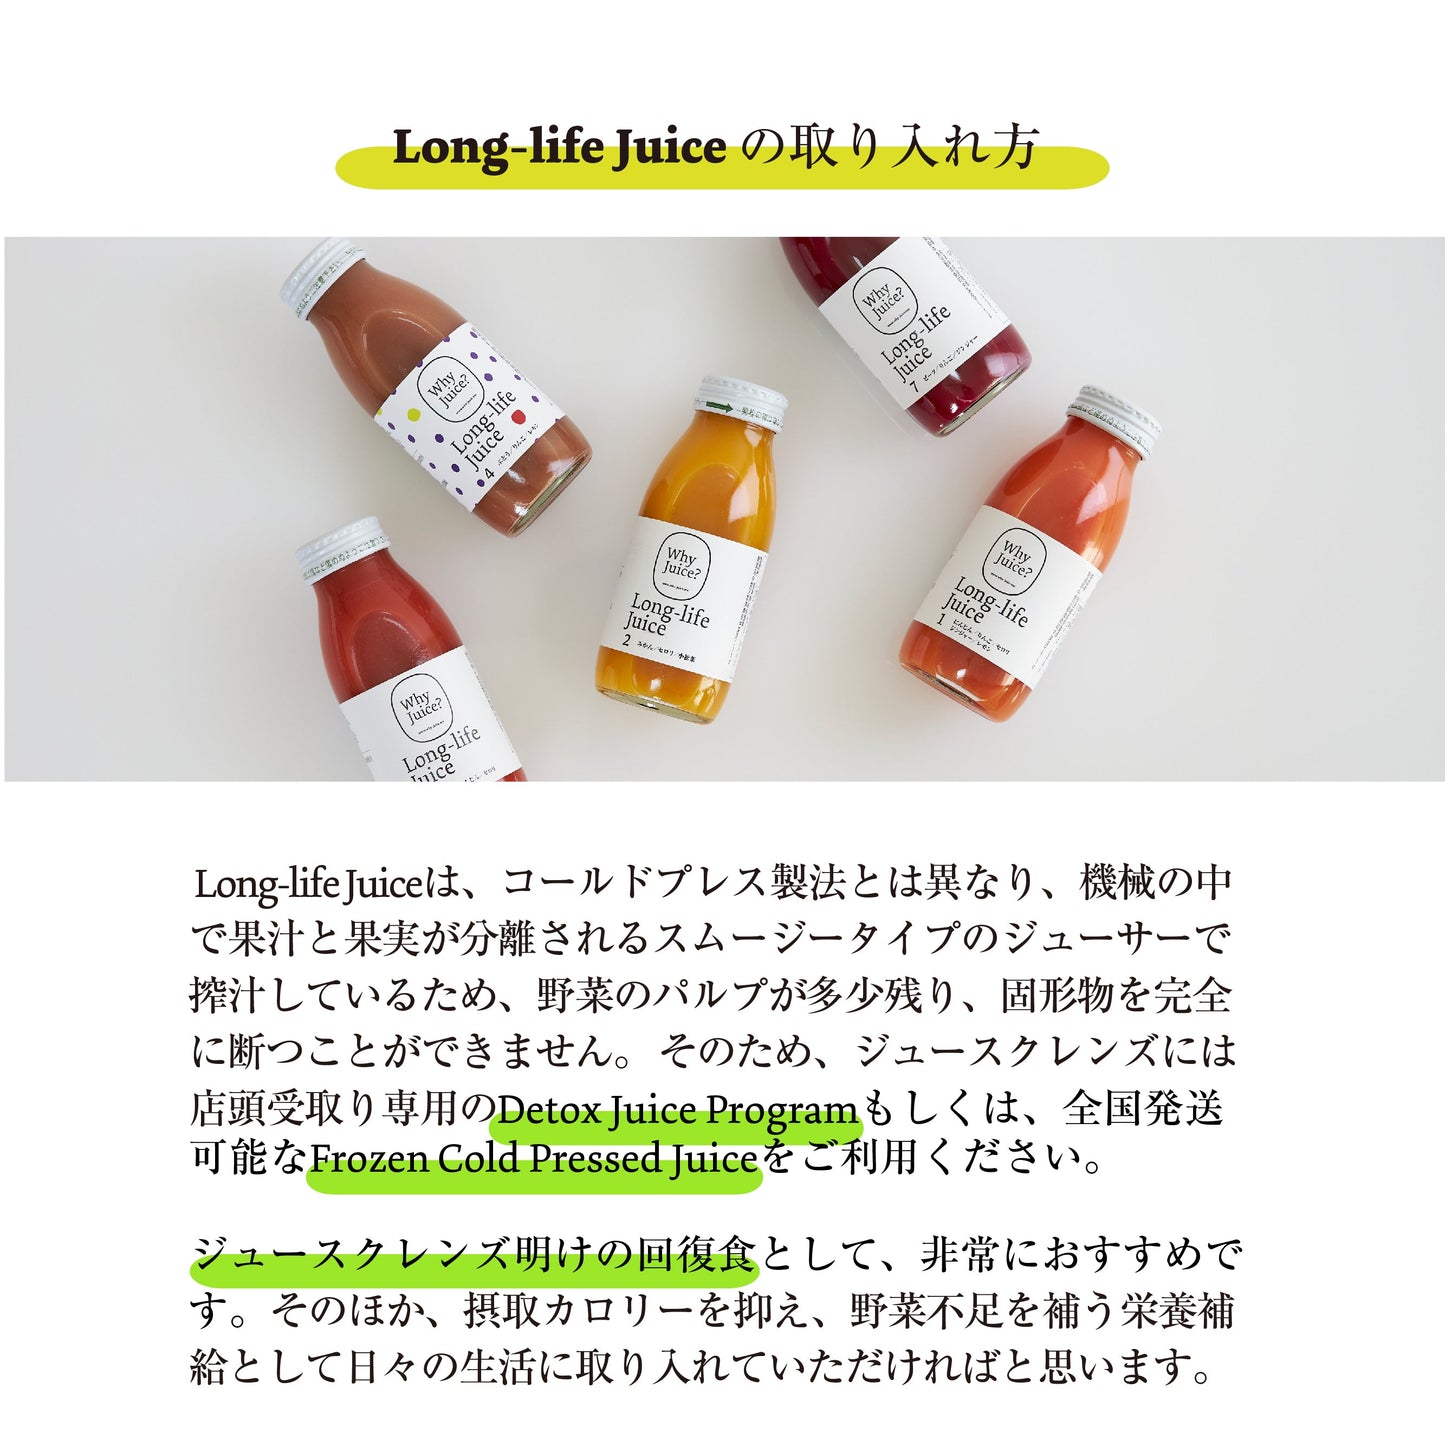 【無添加ジュース】Long-life Juice 3本ギフトボックス(お野菜たっぷりセット)